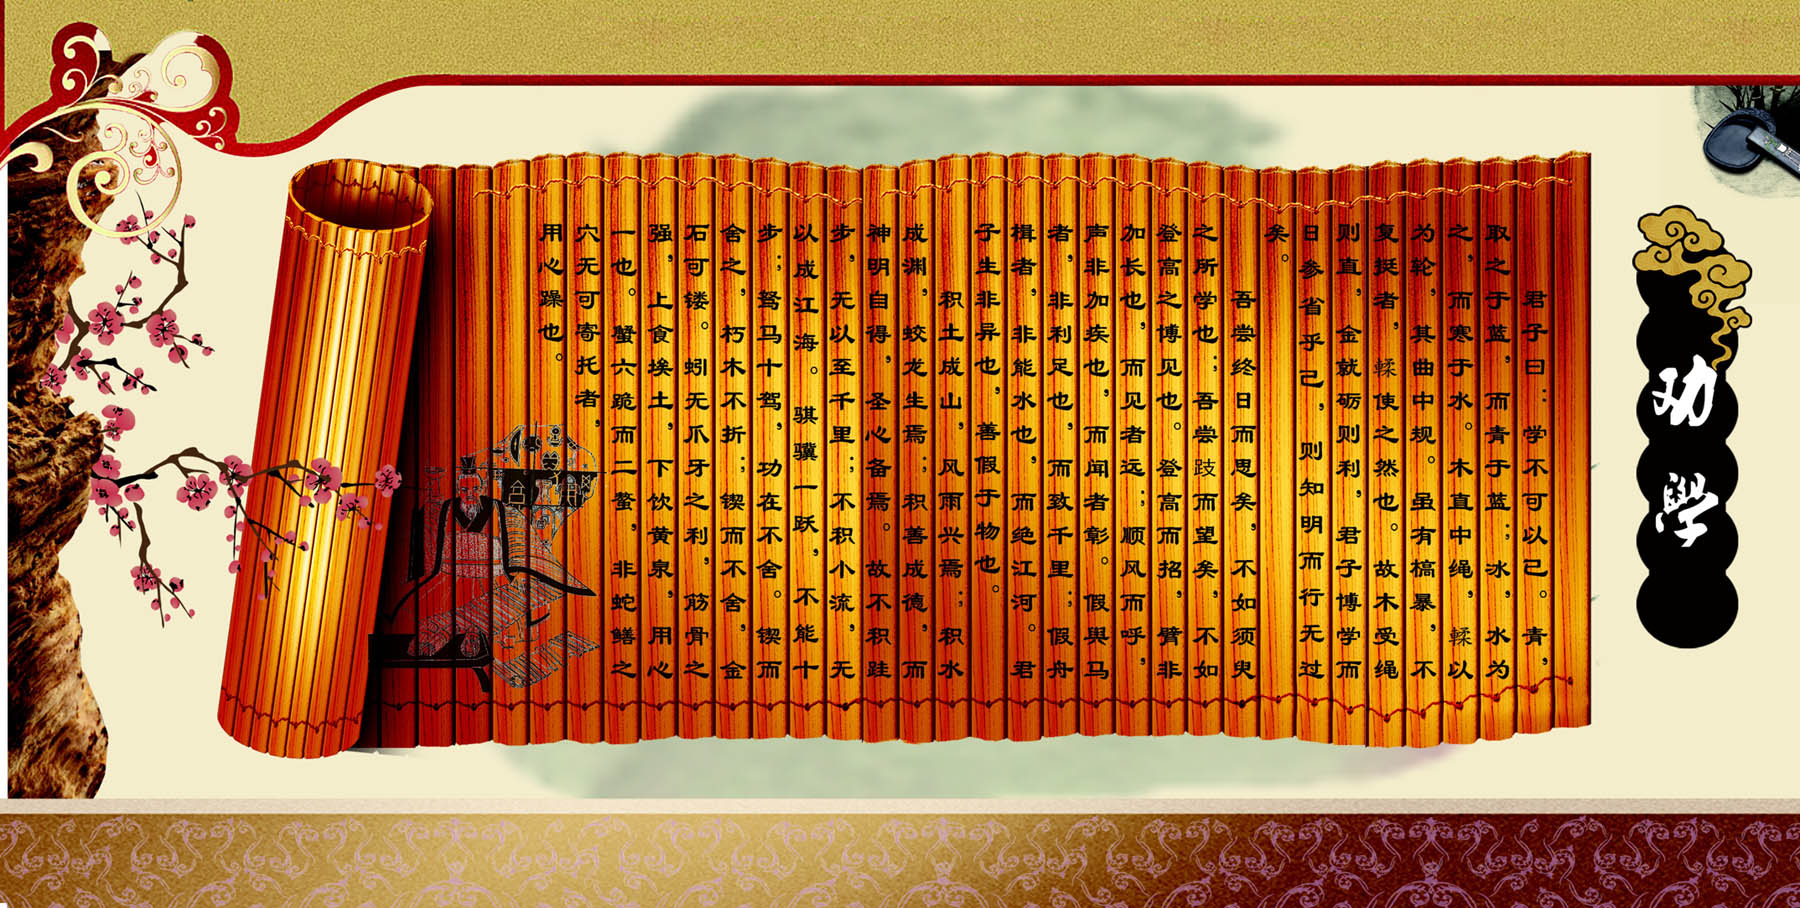 752海报印制展板写真喷绘244中国古典文学校园文化劝学竹简全篇